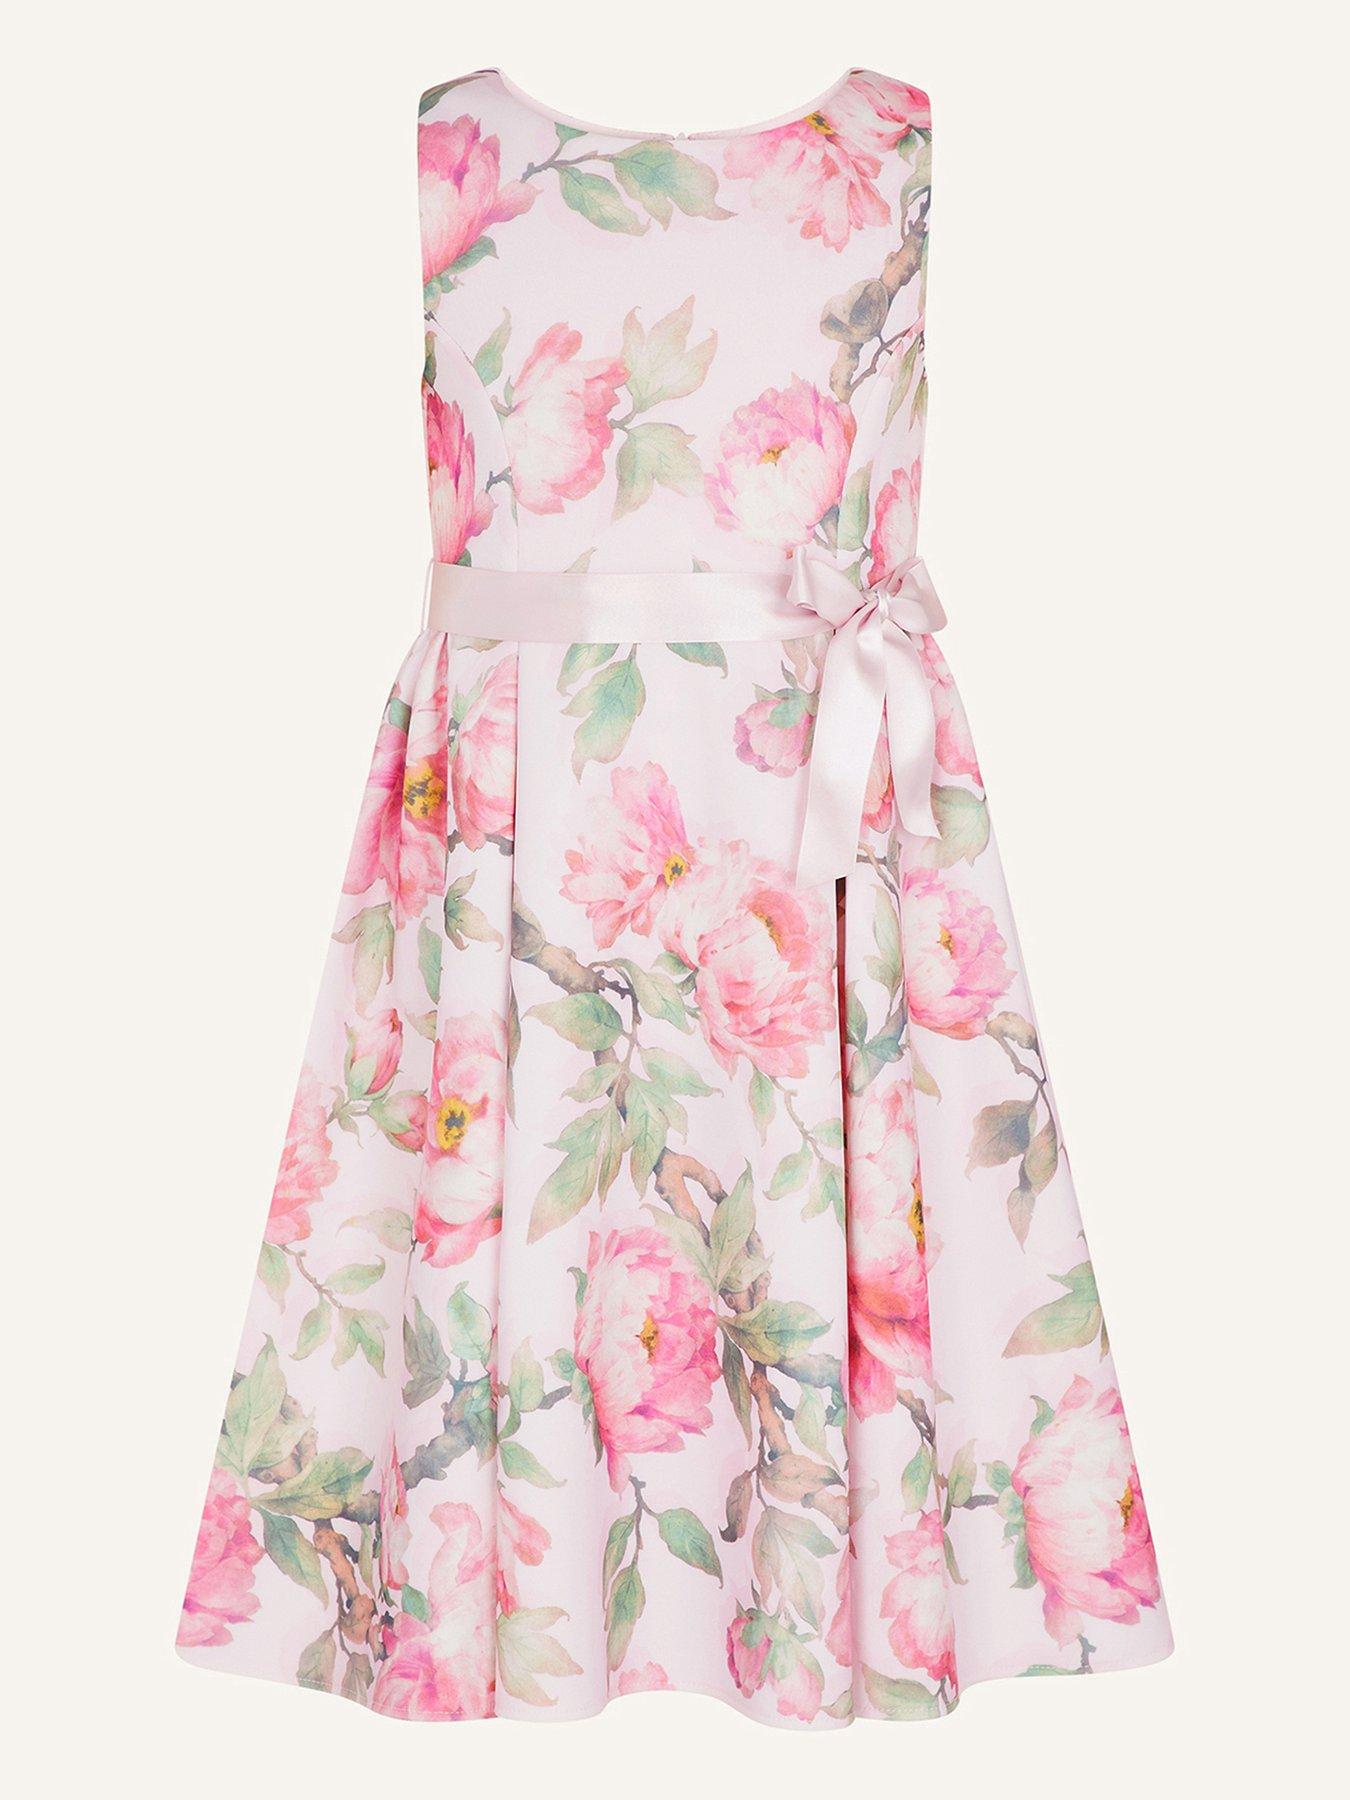  Girls S.e.w. Betty Winter Floral Scuba Dress - Pink